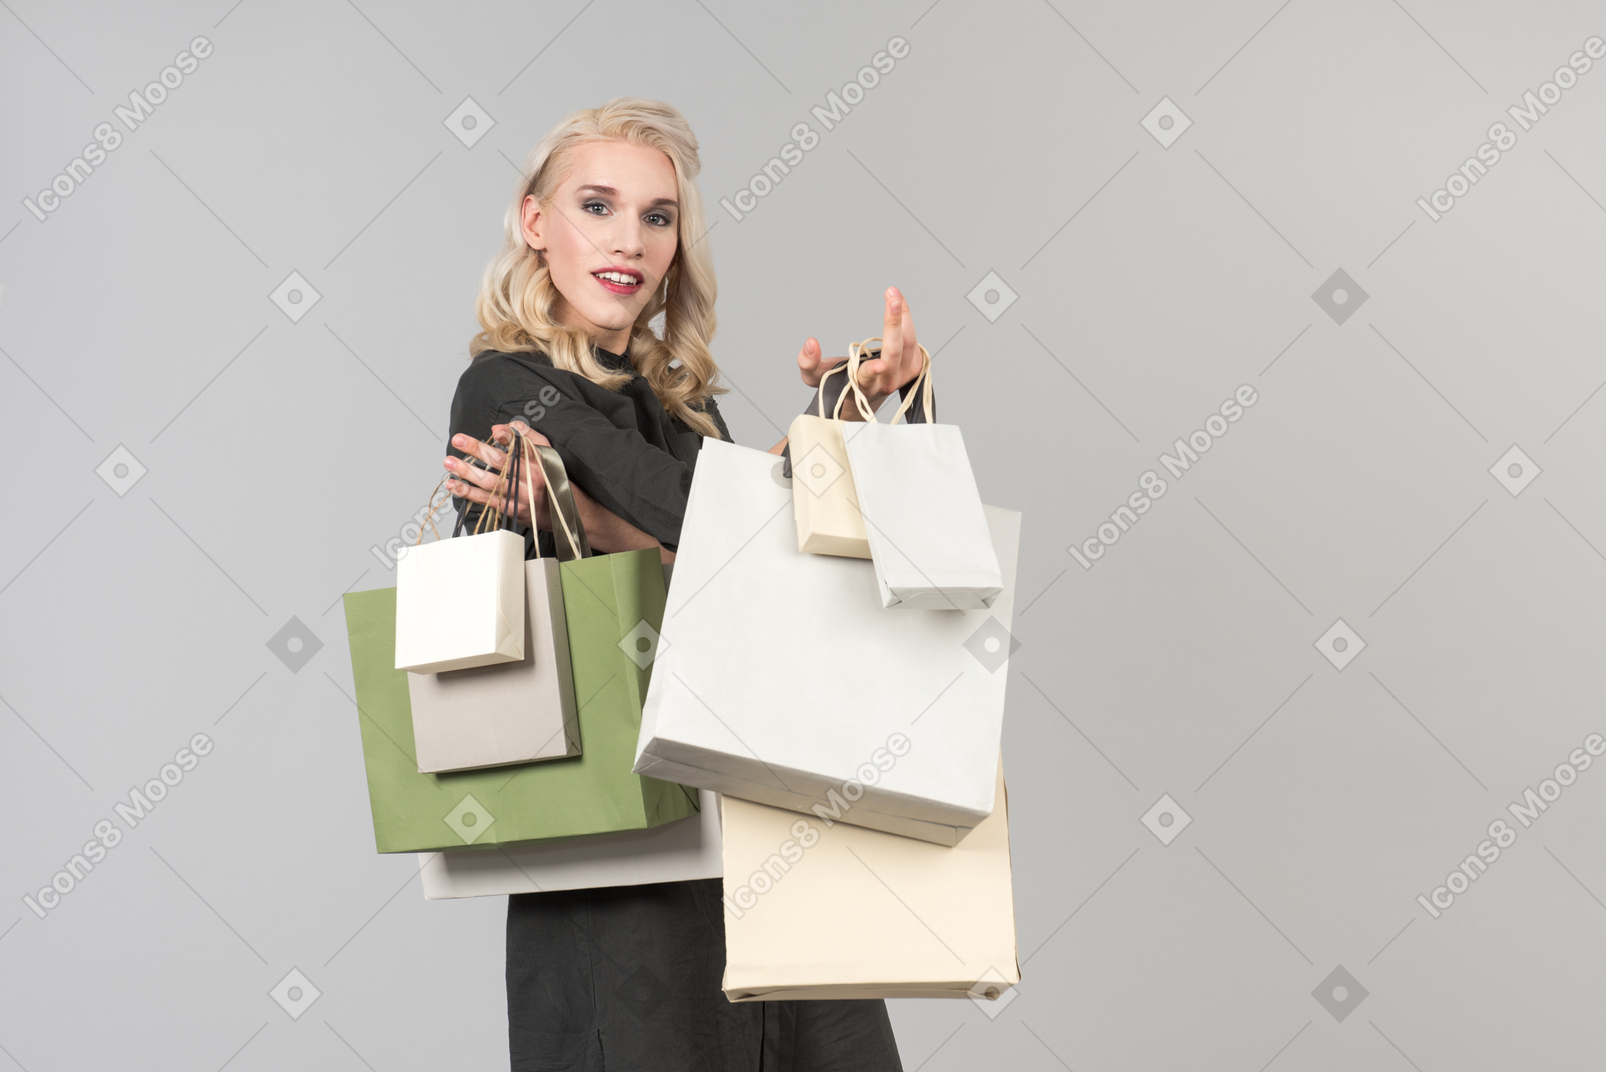 Eine junge, hübsche, blonde person in einem schwarzen kleid, die ein paar einkaufstüten in beiden händen hält